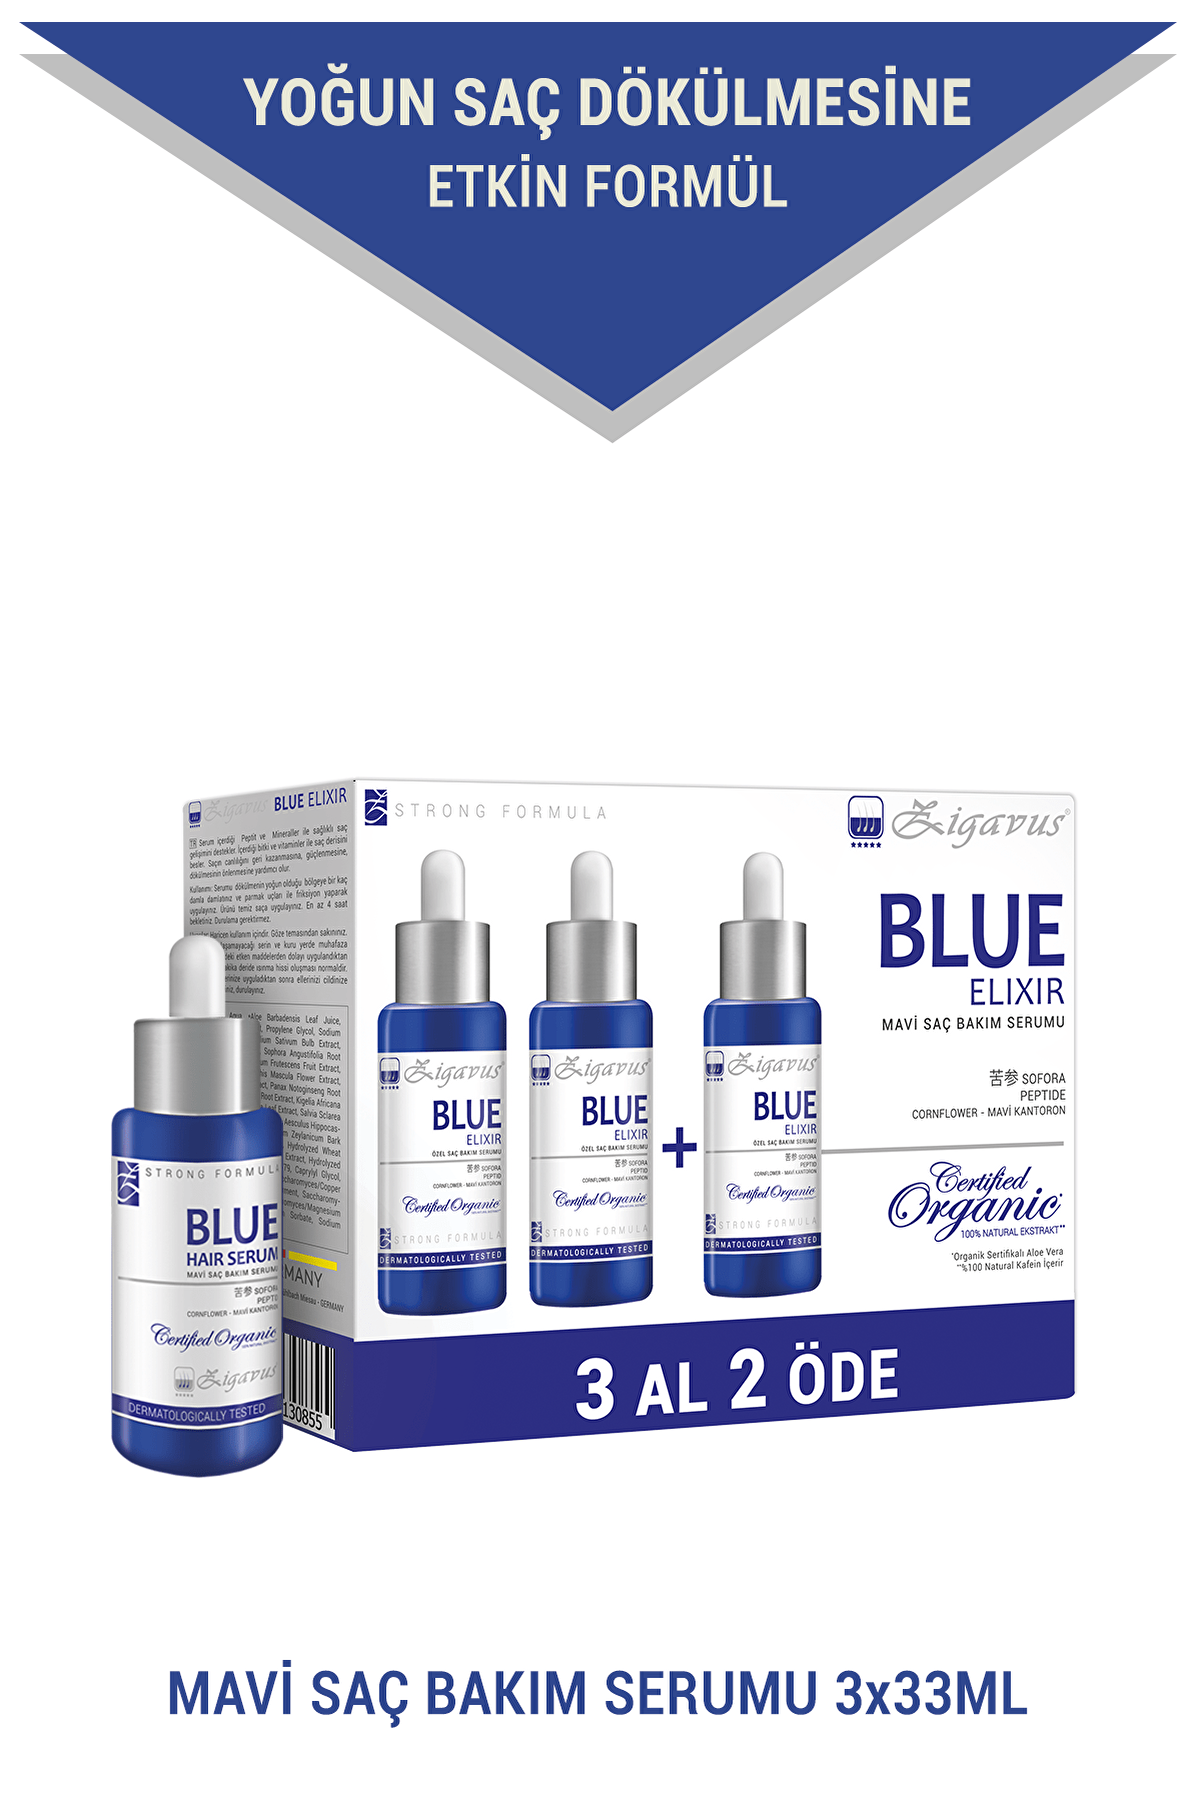 Zigavus Blue Saç Bakım Serumu 3x33 ml (3 al 2 öde) - Mavi Su 8699349130855